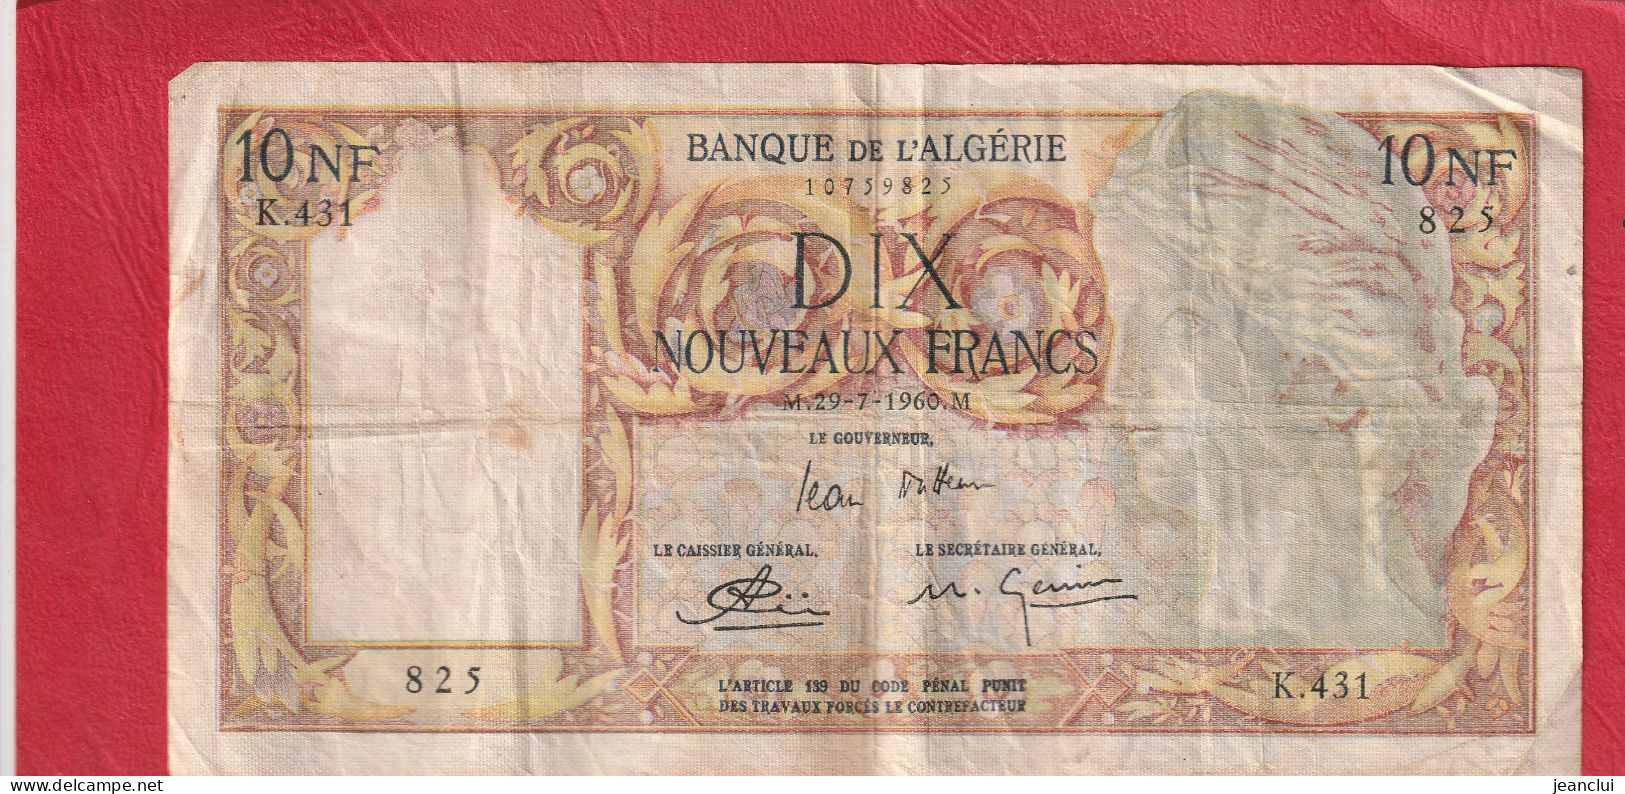 BANQUE DE L'ALGERIE  .  10 NOUVEAUX FRANCS  .  29-7-1960  . SERIE K.431  .  N° 825  .  2 SCANNES  .  BILLET USITE - Algérie